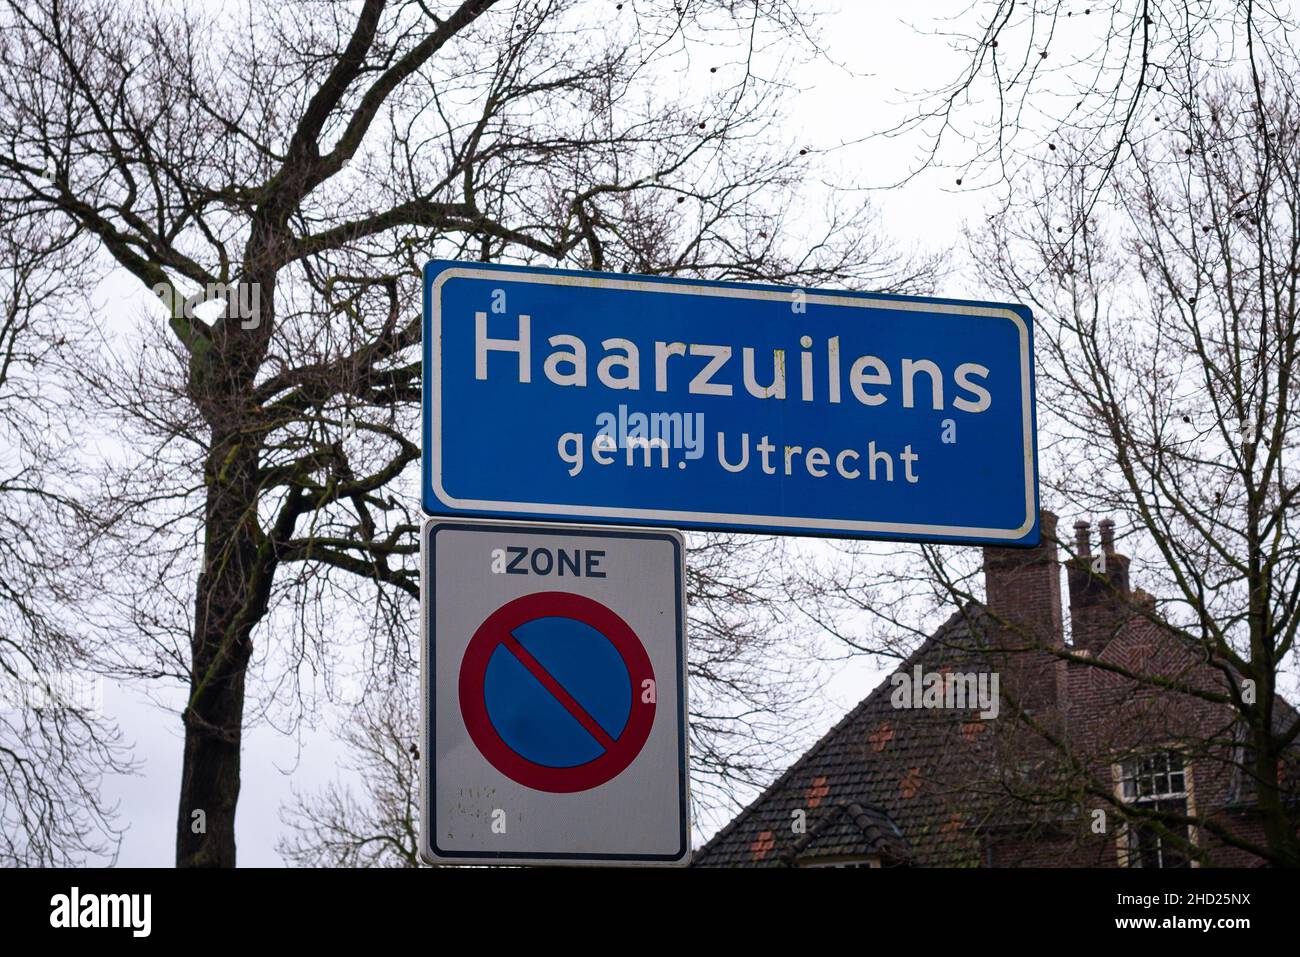 Ortsname Zeichen von Haarzuilens, einem malerischen touristischen Dorf, Gemeinde Utrecht, Niederlande. Schild unten bedeutet, dass das Parken verboten ist. Stockfoto